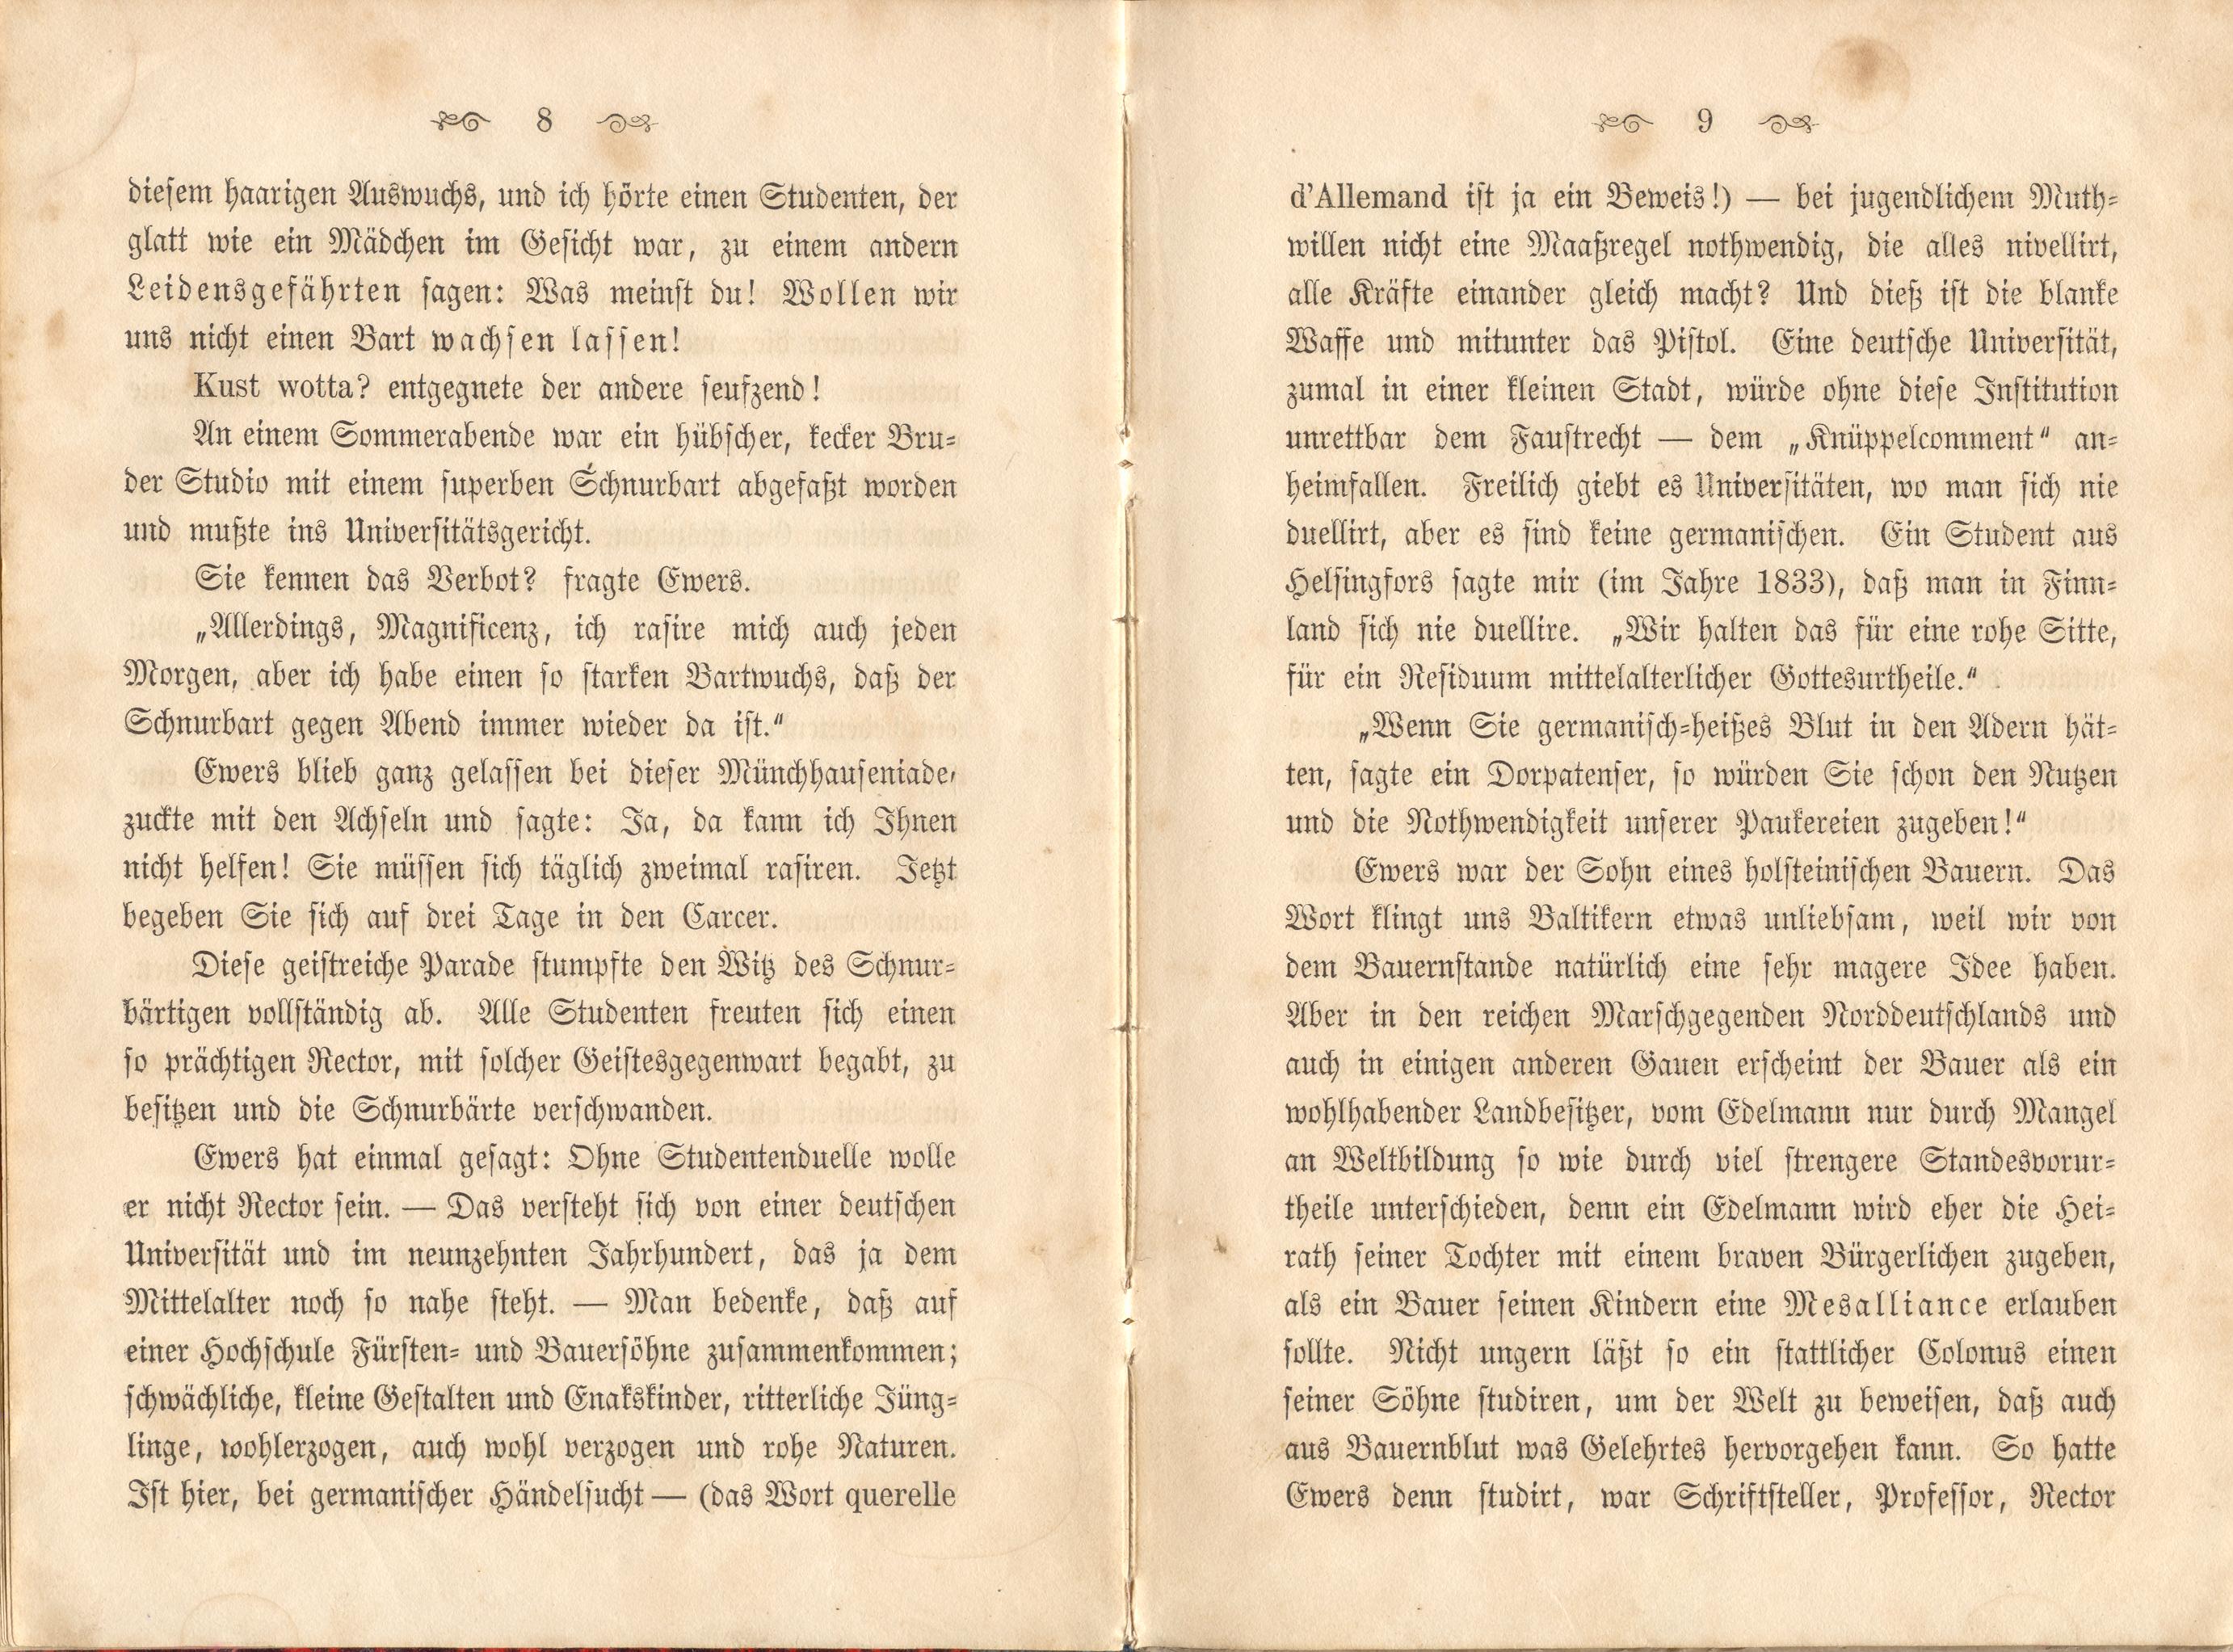 Dorpats Grössen und Typen (1868) | 7. (8-9) Haupttext